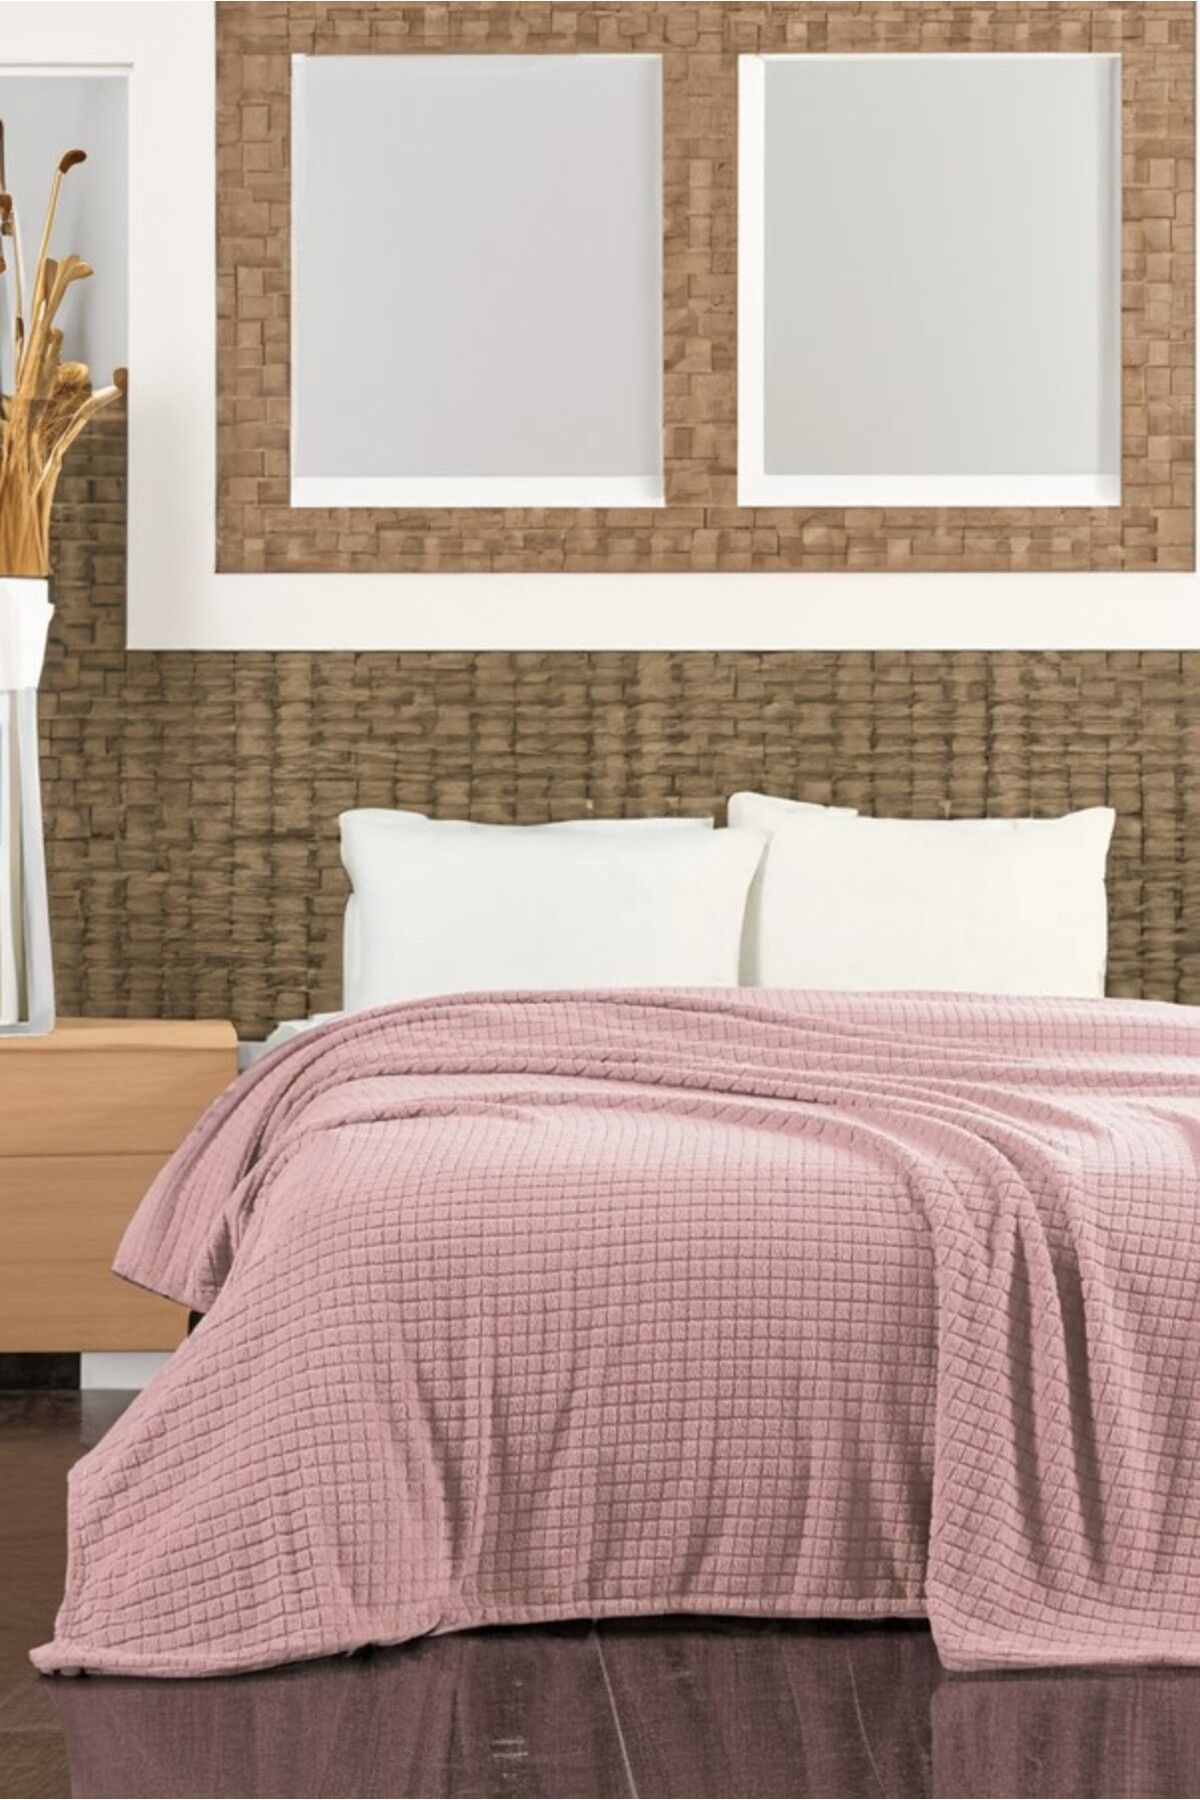 Komfort Home Çift Kişilik Wellsoft Kare Desenli Peluş Sıcak Tutan Tv Battaniyesi 200x220 Cm